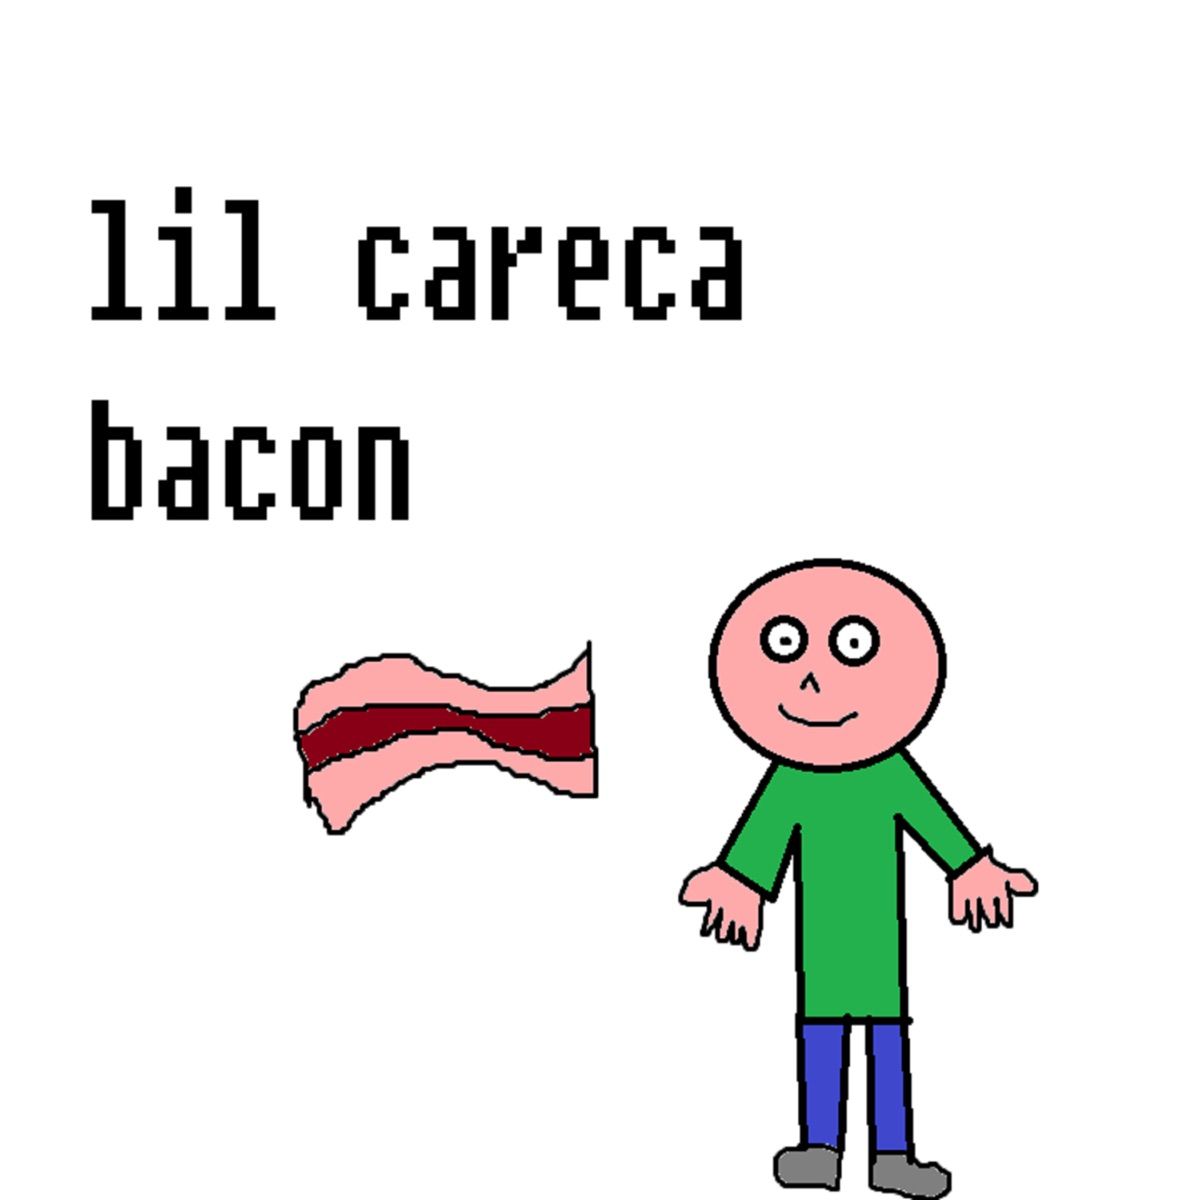 Mr. Calvo  Lil Careca